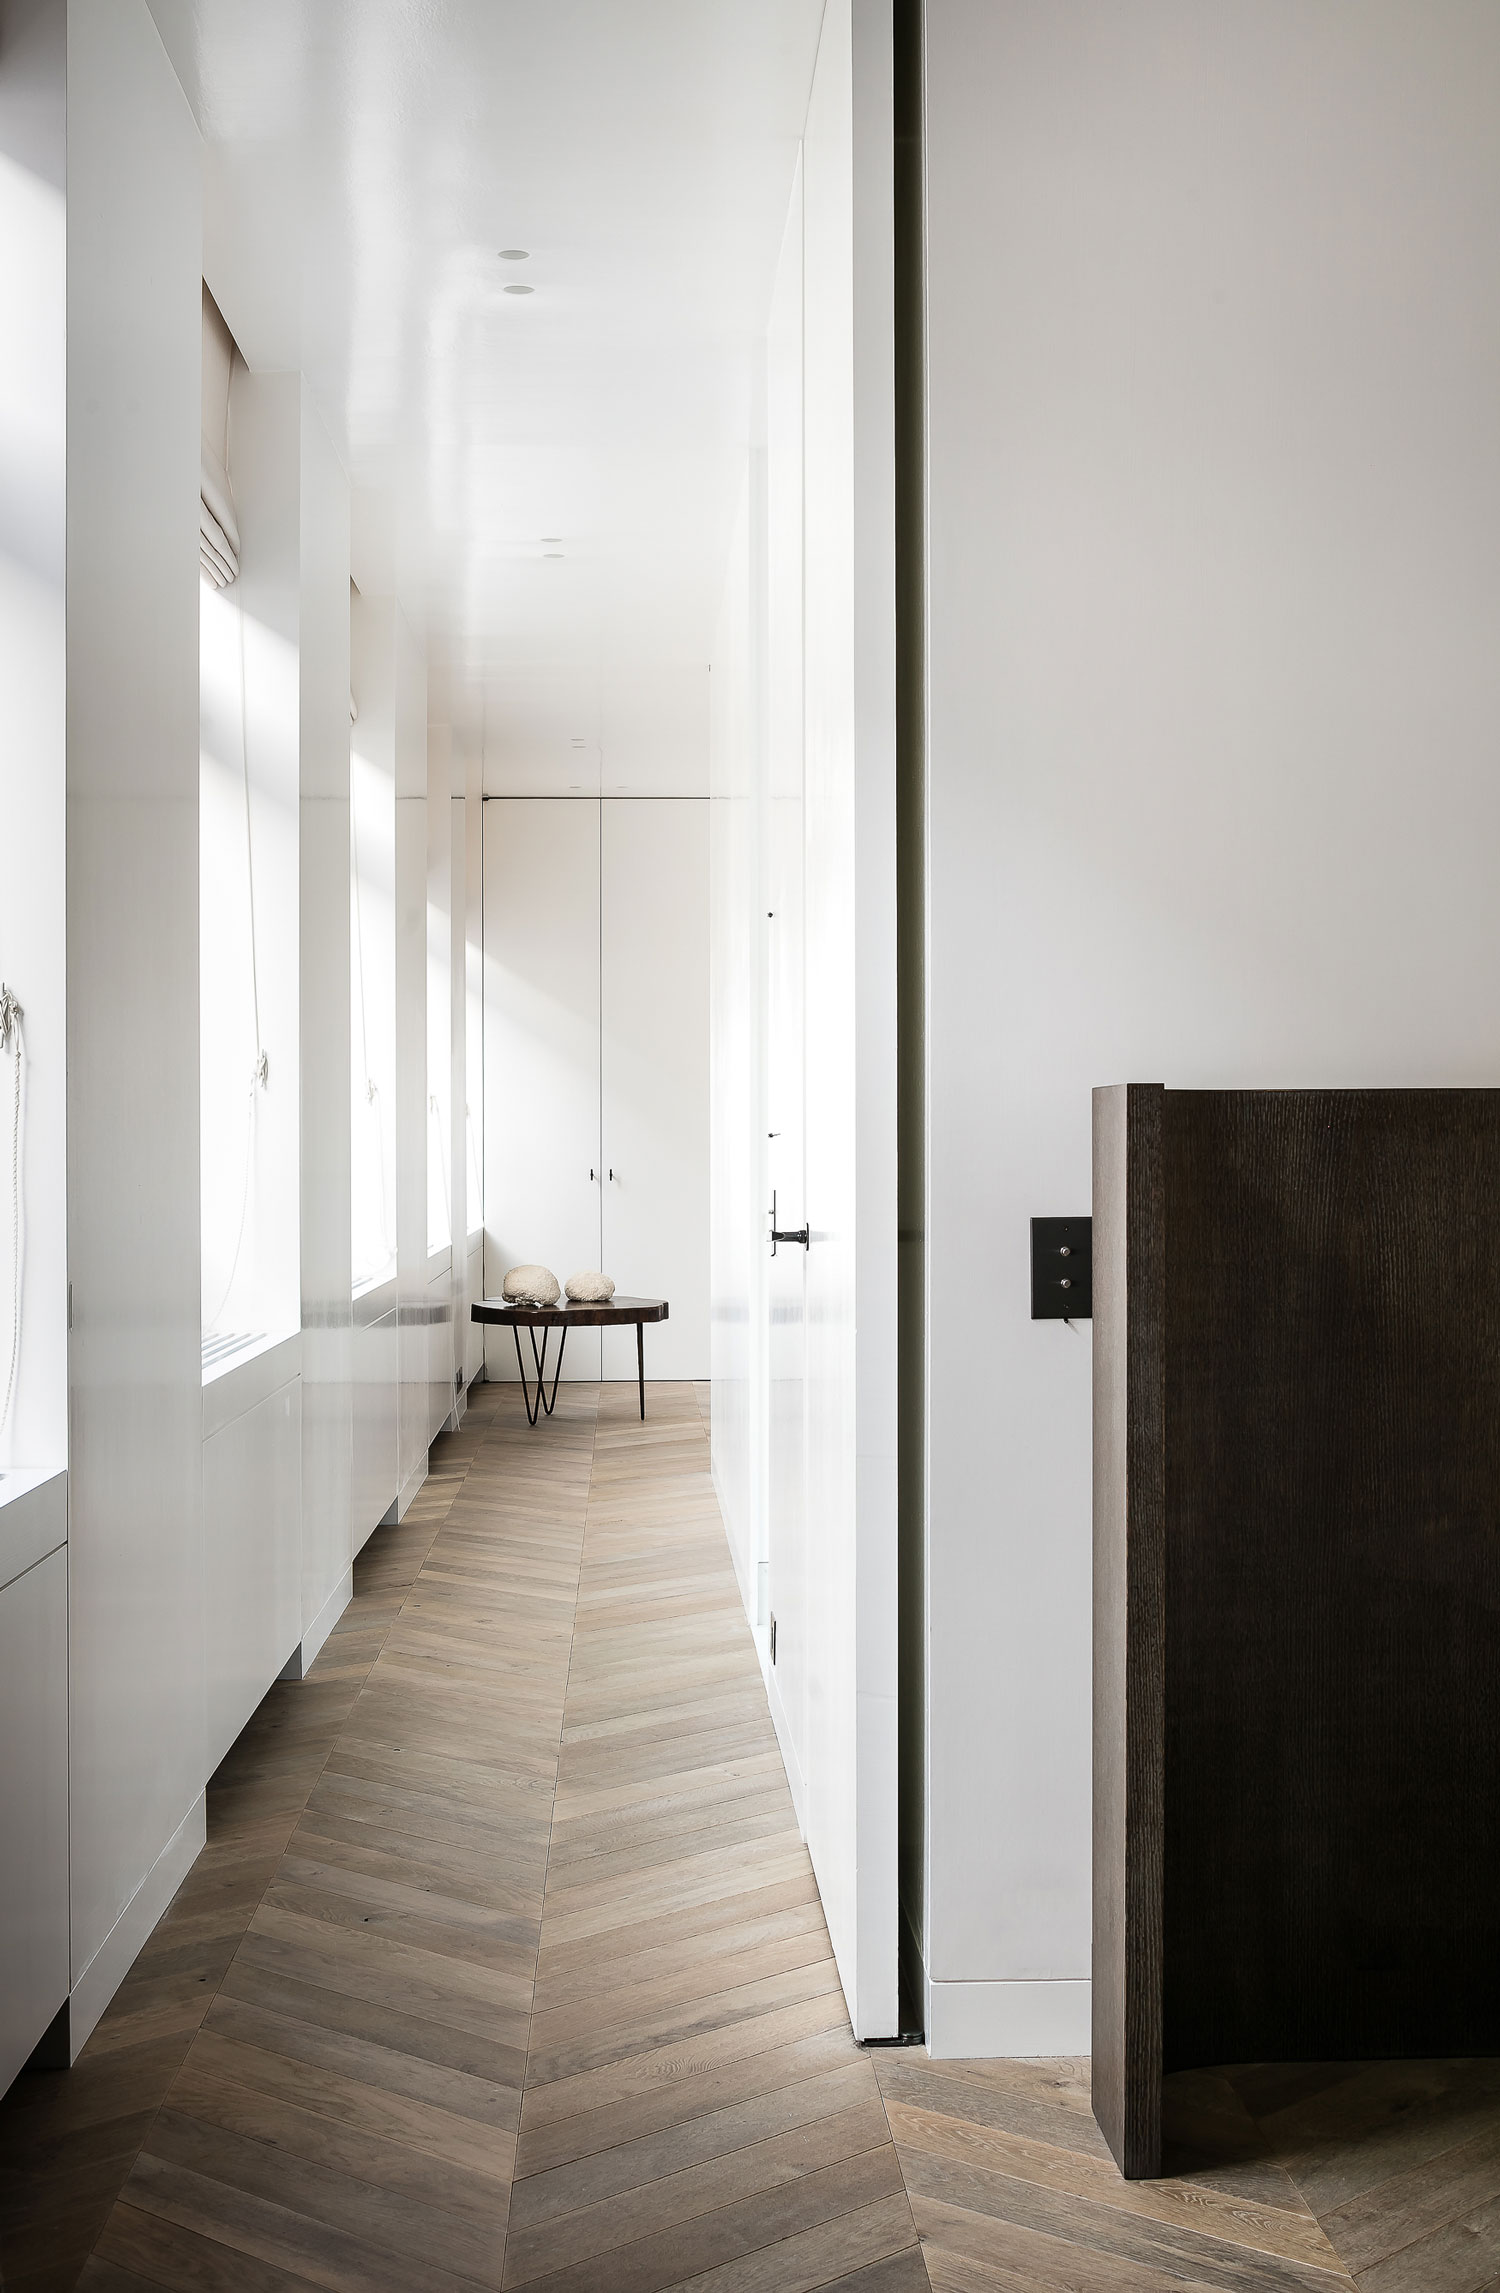 不落俗套的极简主义联排别墅 | Nicolas Schuybroek Architects